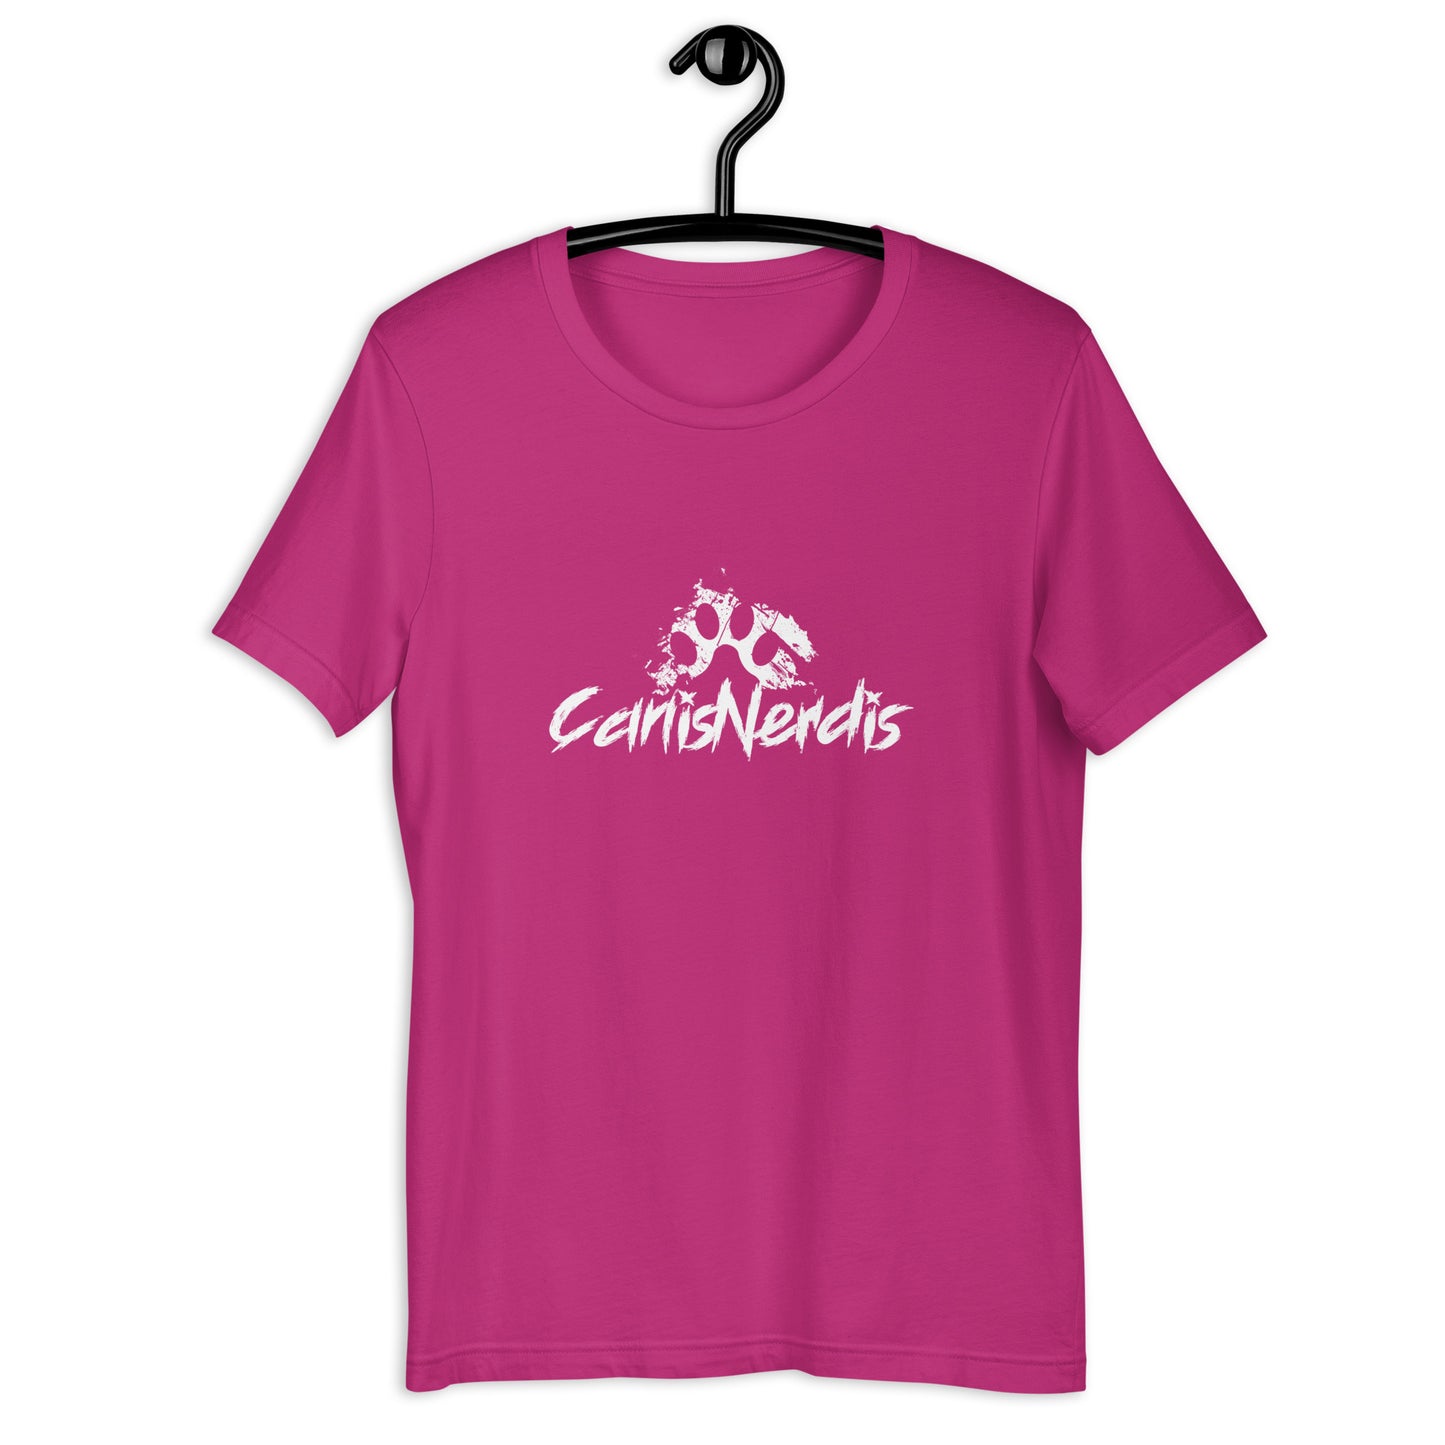 CANIS NERDIS - 3 - Unisex t-shirt